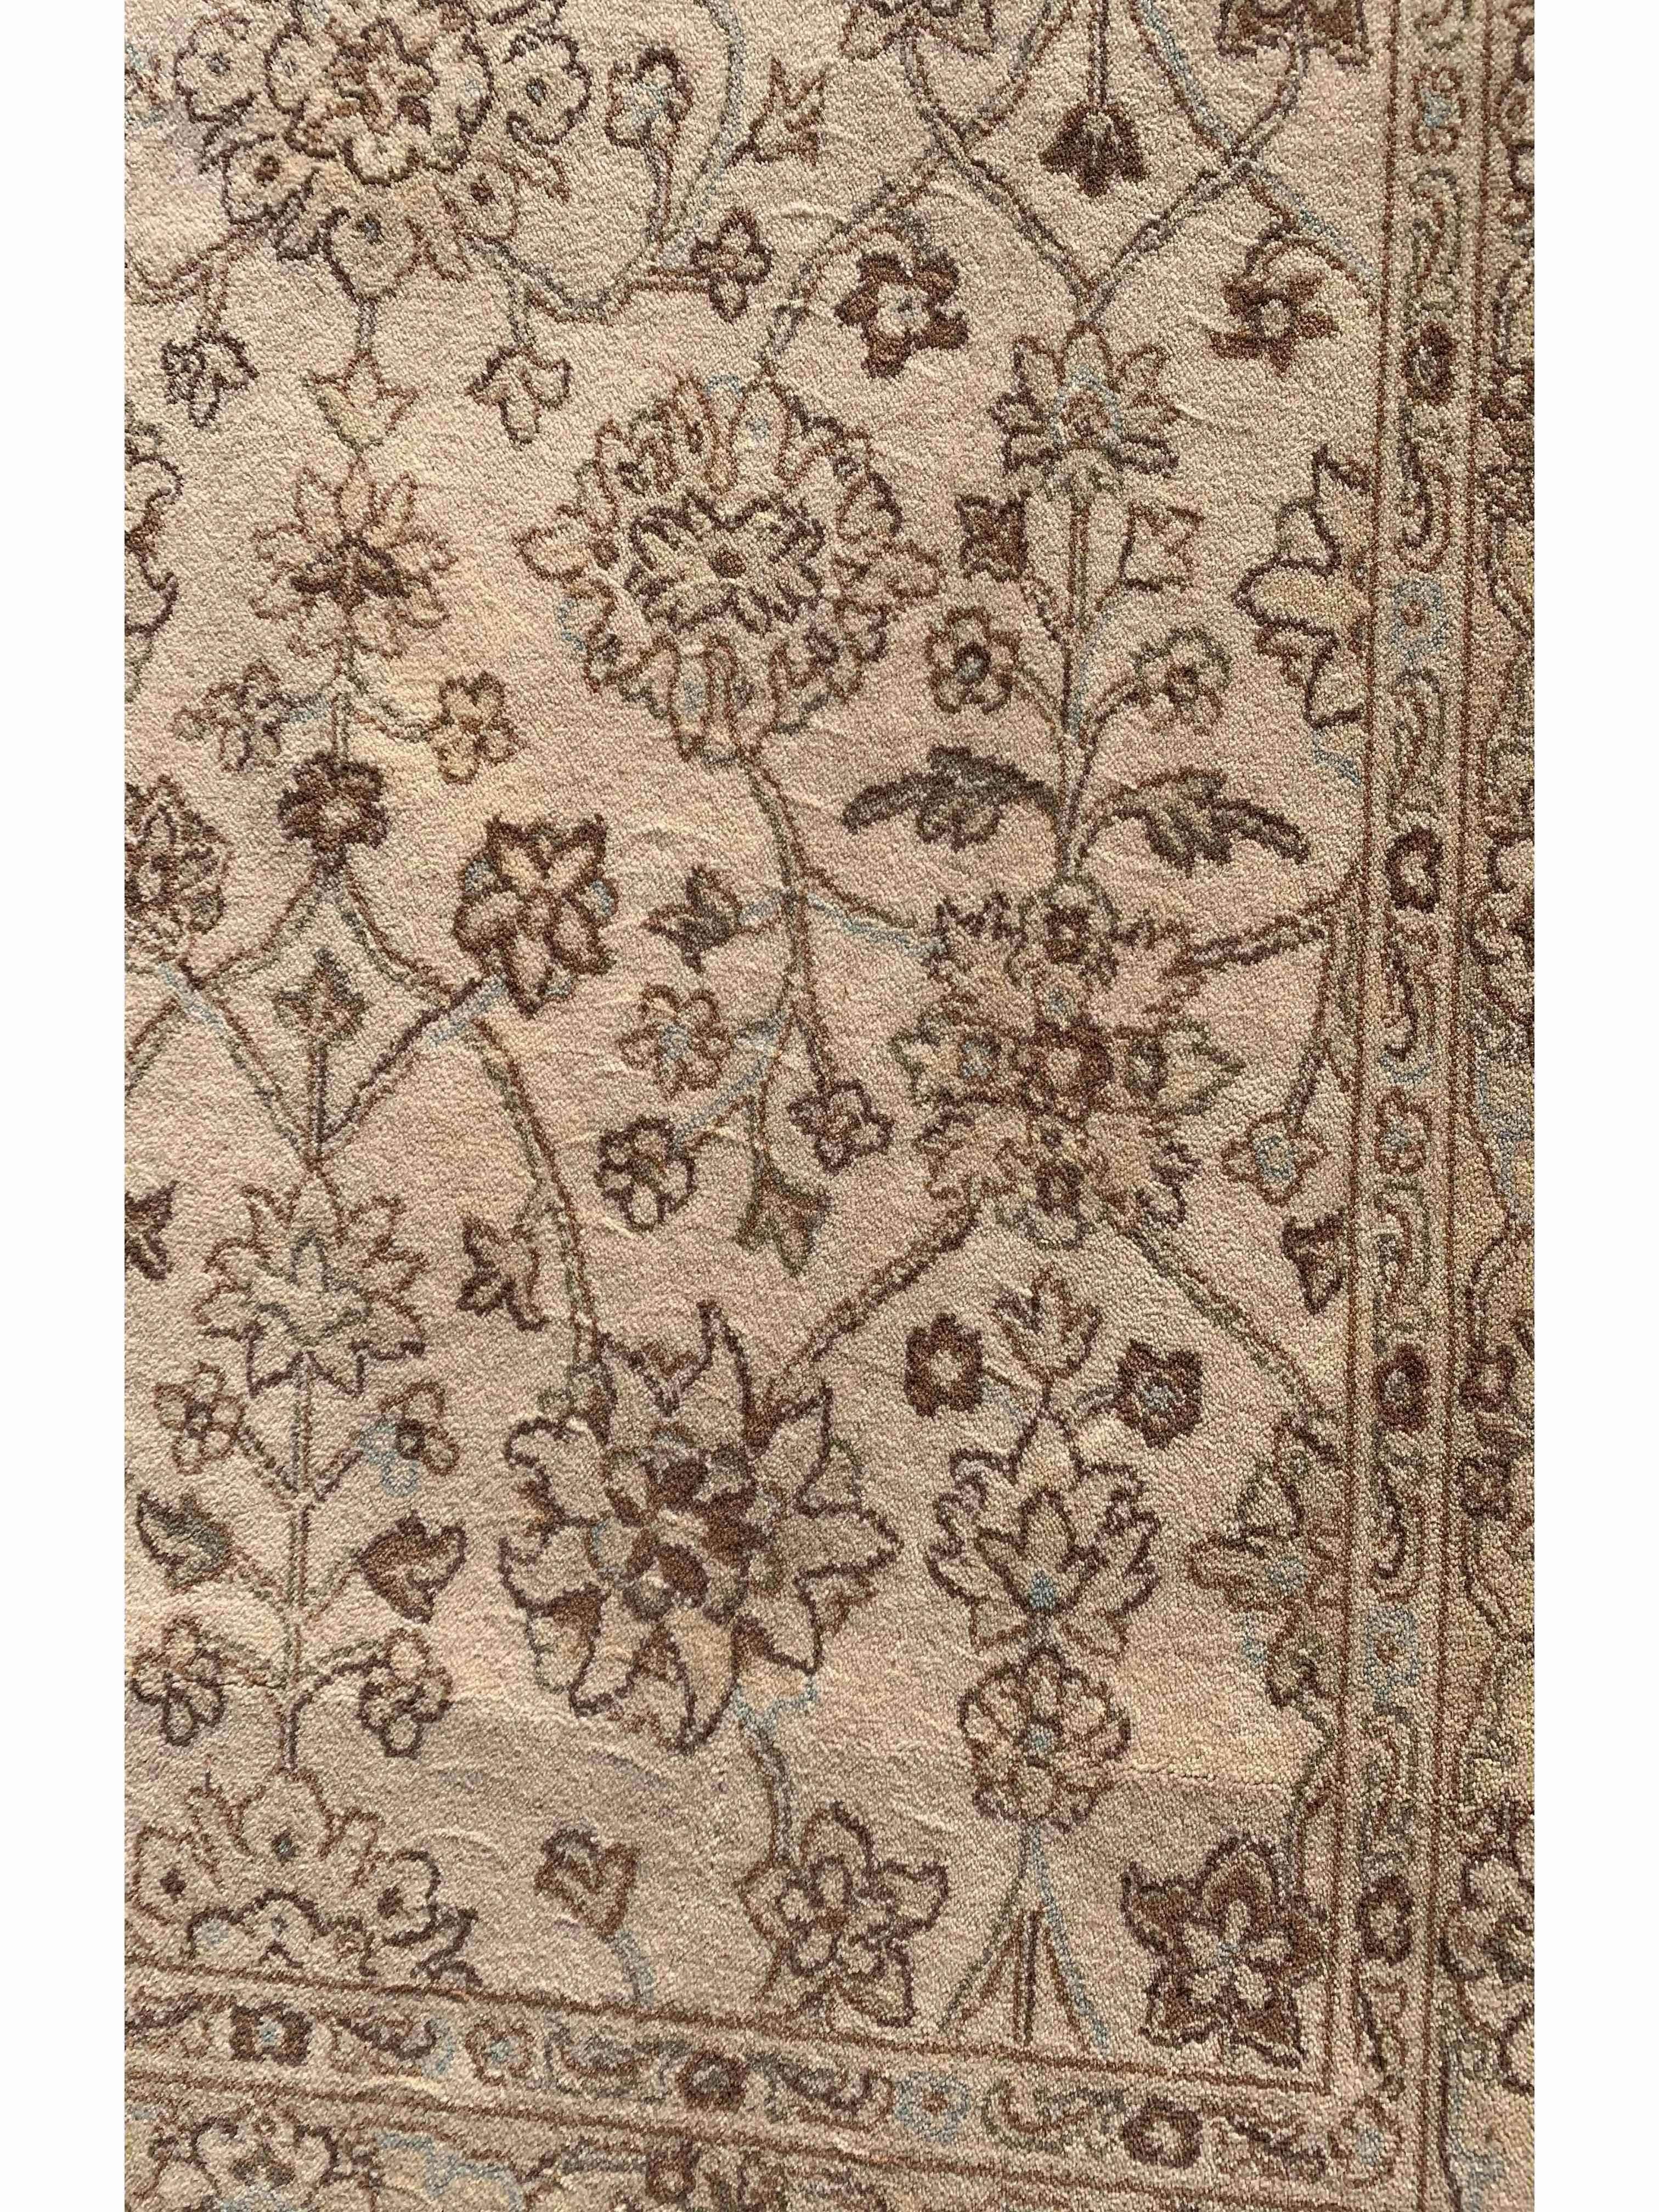 170 x 120 cm Floral Kashan powerloom Traditional Brown Rug - Rugmaster